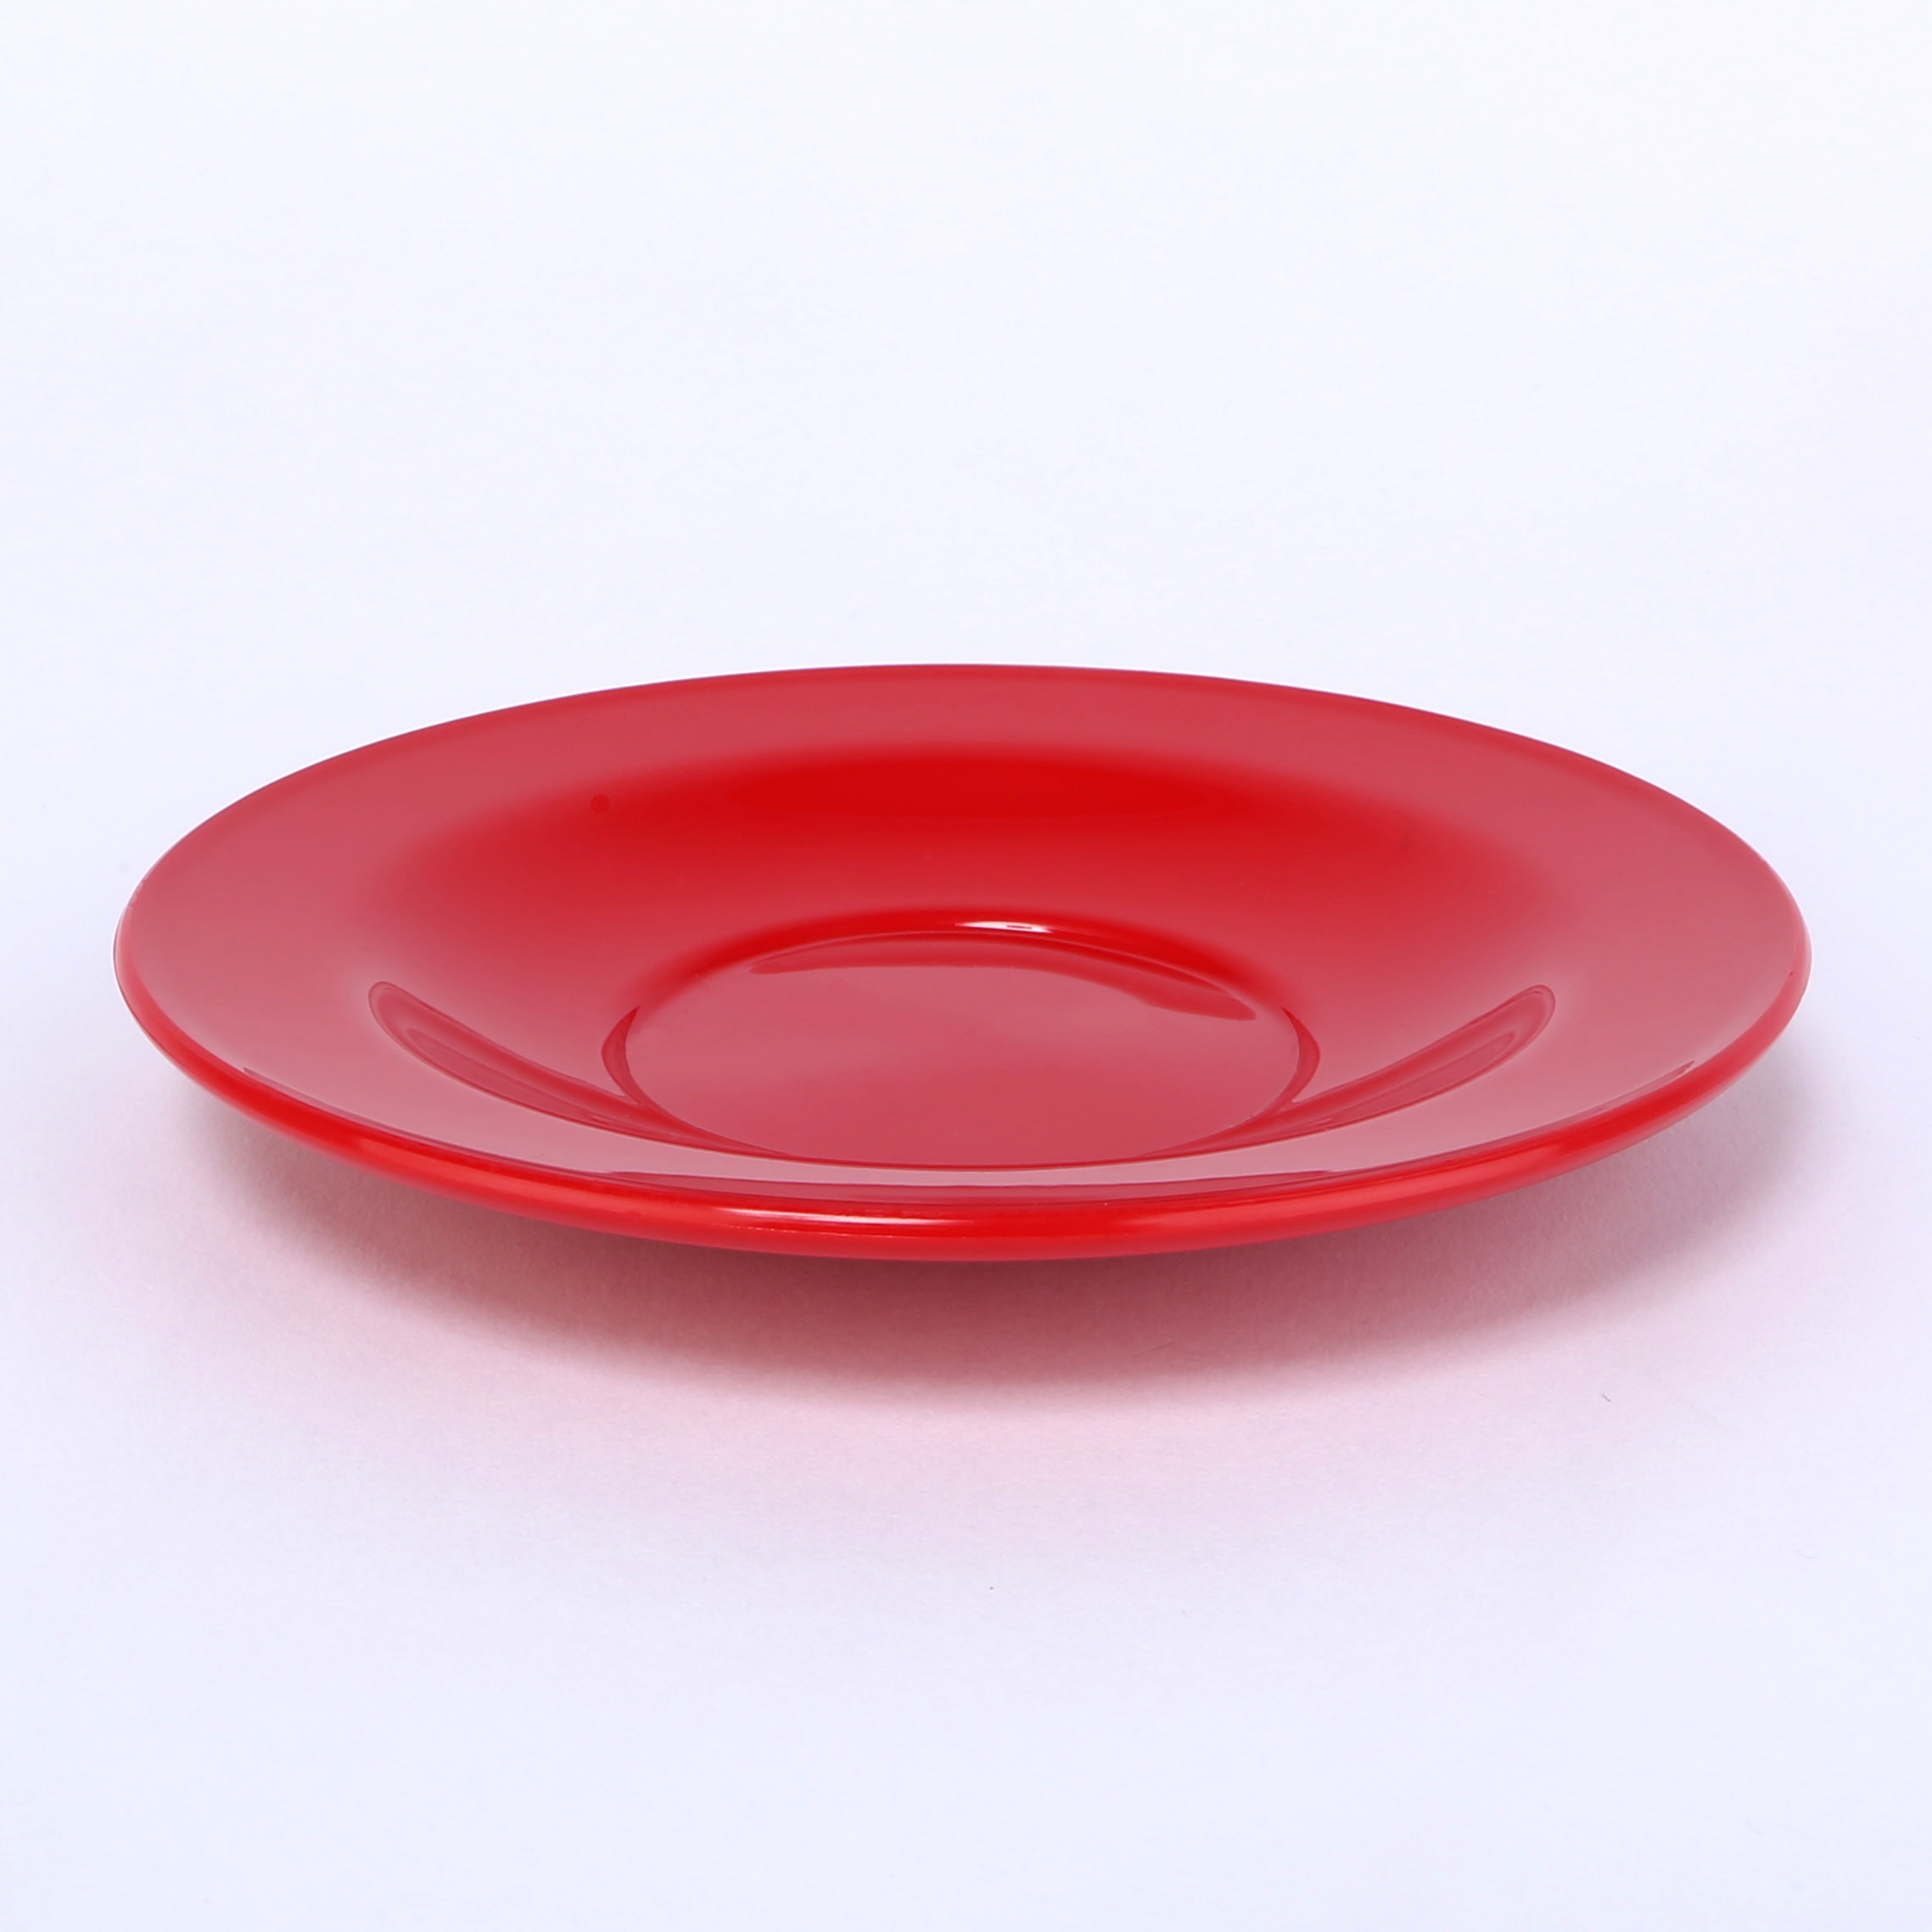 vaLon Zephyr Untertasse 13,5 cm aus schadstofffreiem Kunststoff in der Farbe rot.